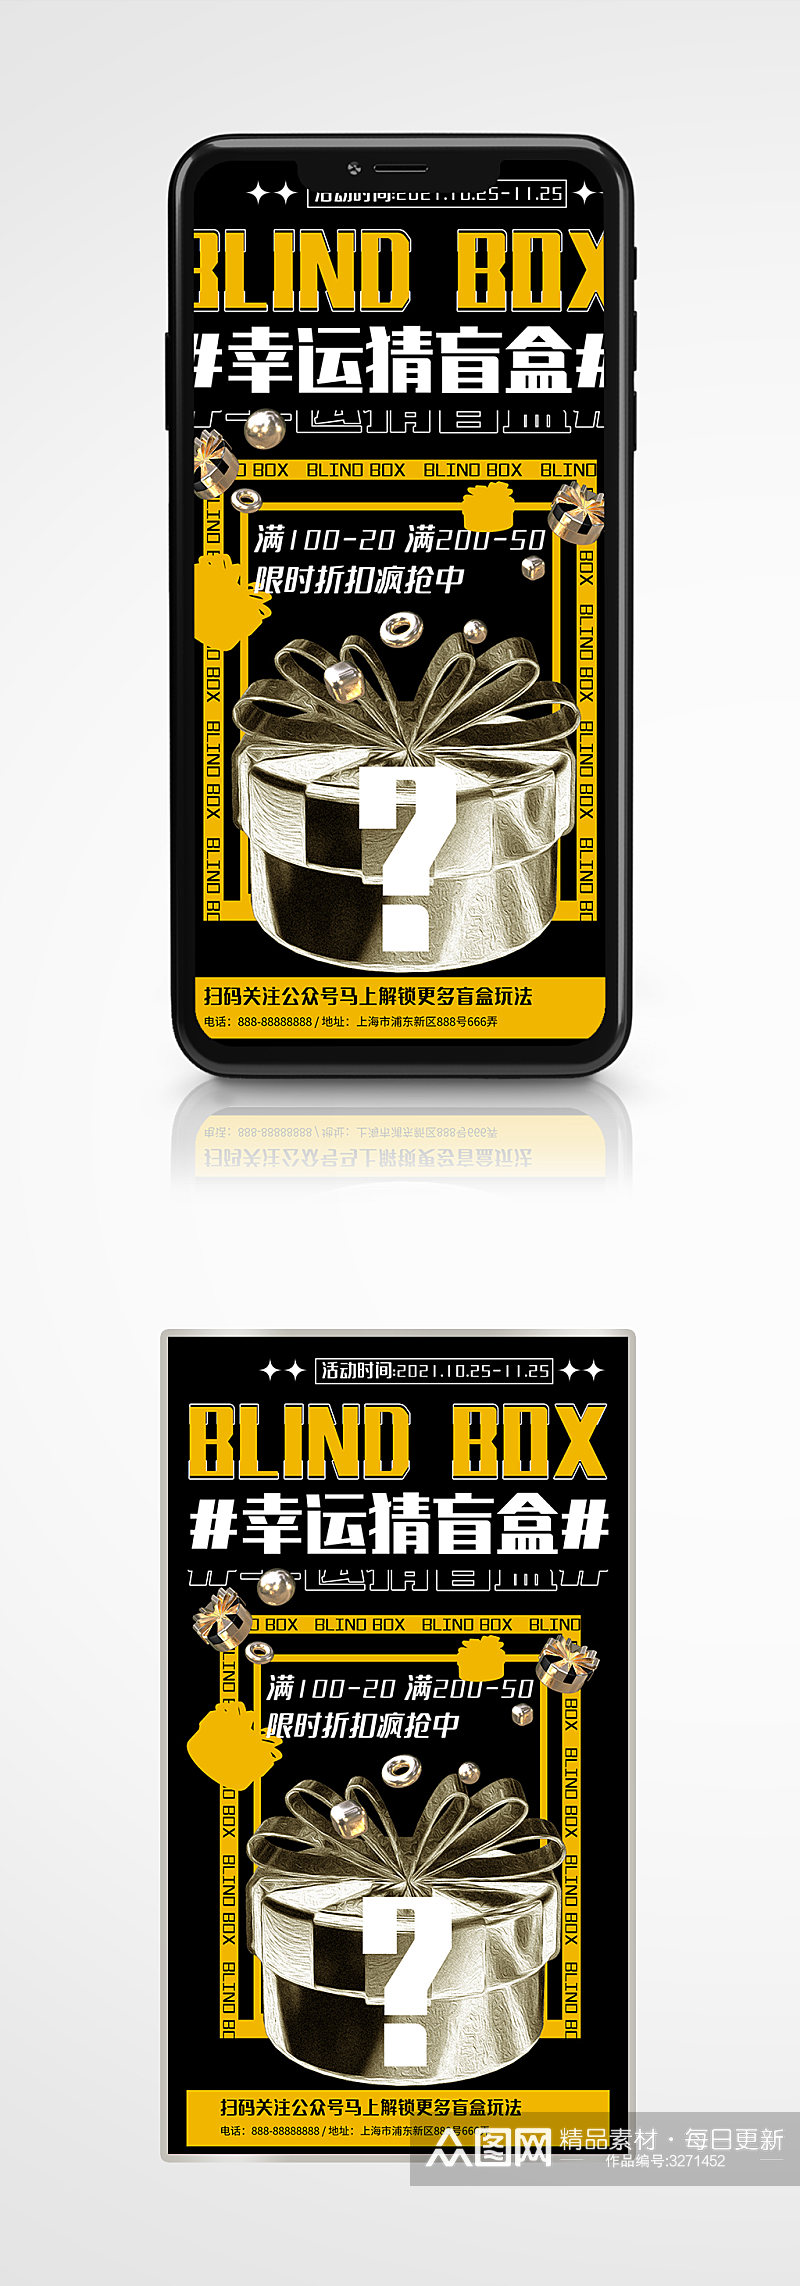 黄色酸性潮流盲盒促销宣传手机海报创意素材